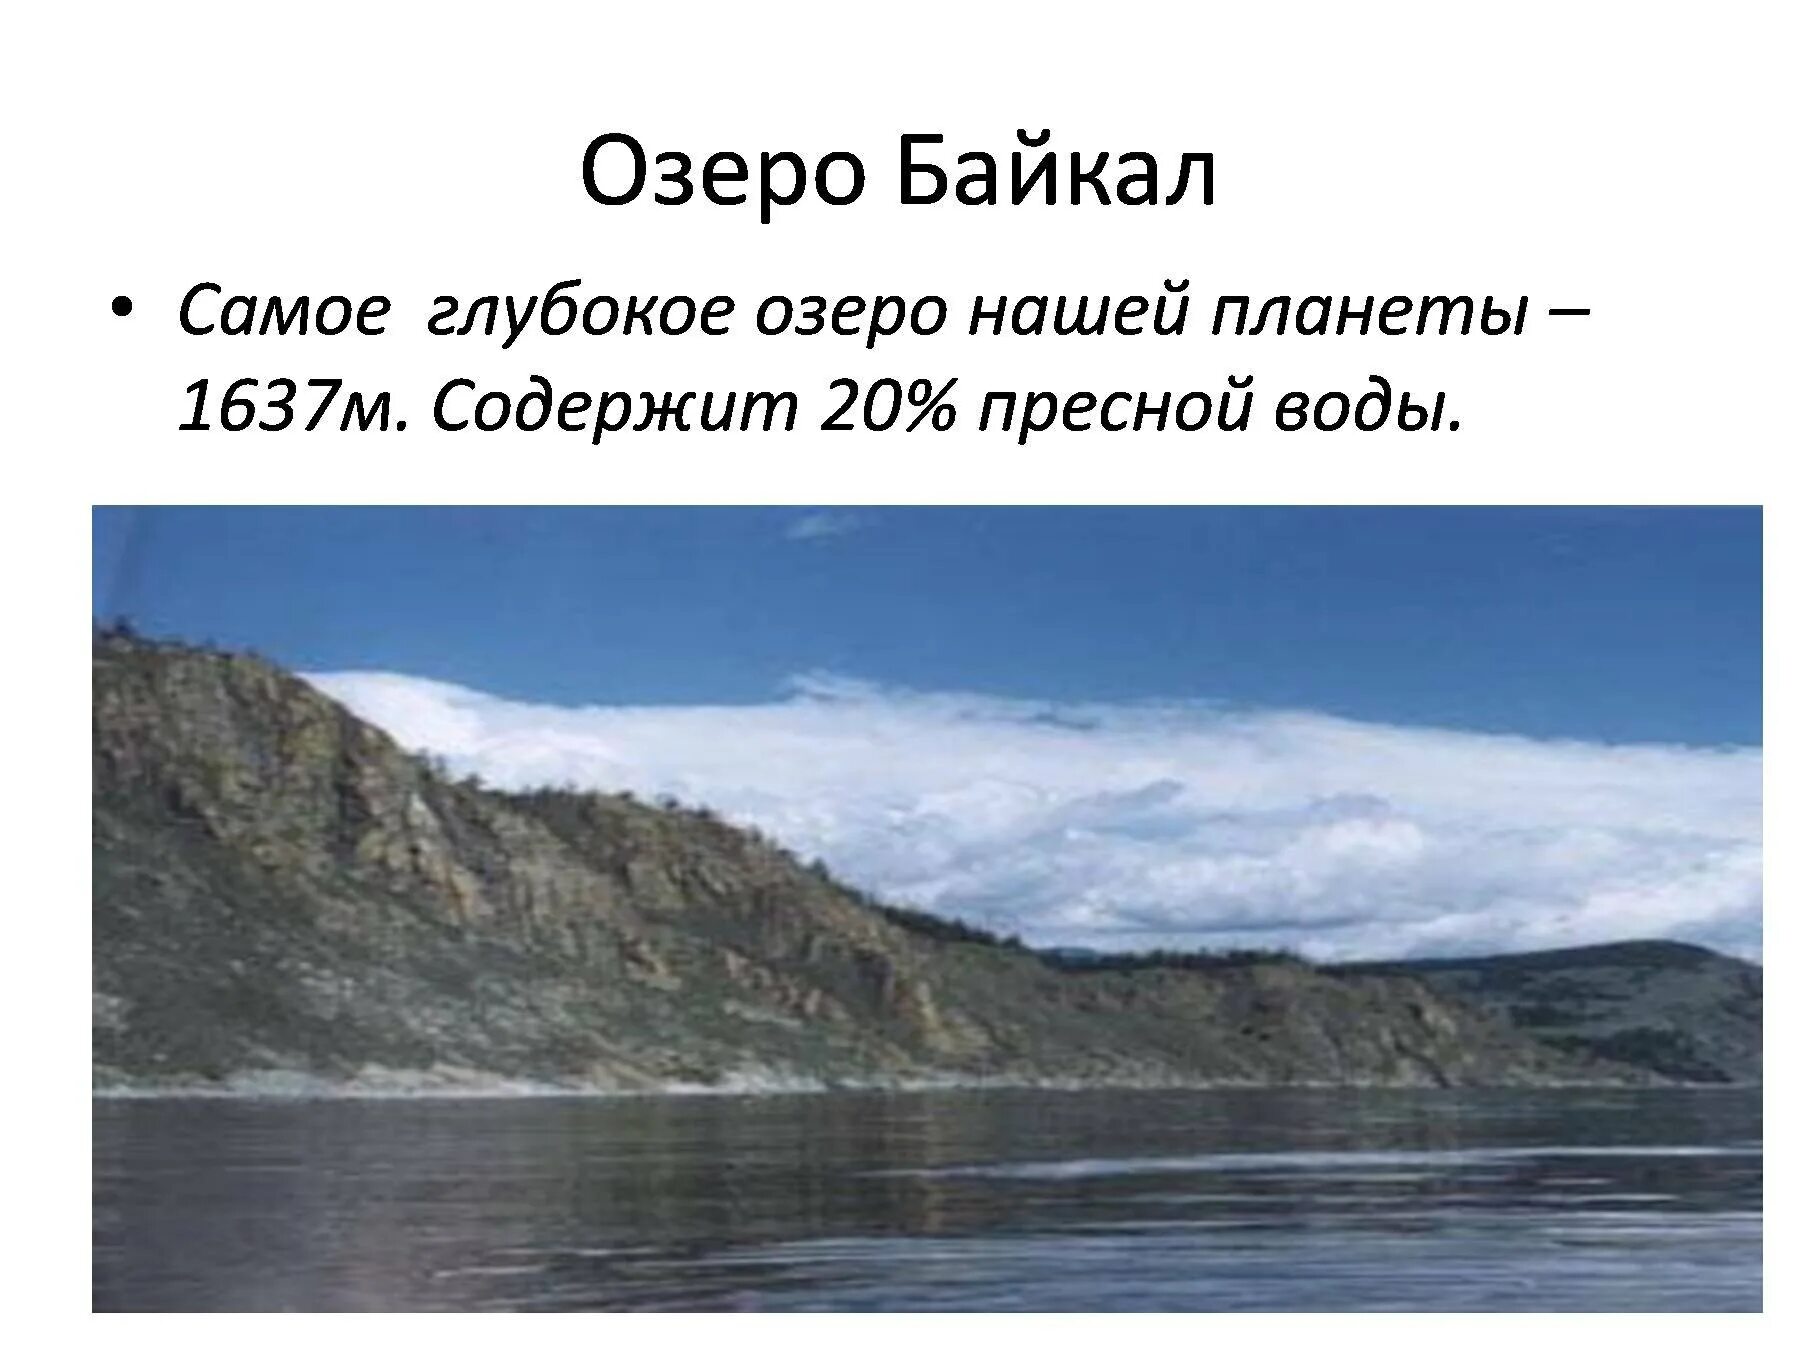 Самое глубокое озеро нашей планеты. Байкал самое глубокое. Диктант озеро Байкал. Самое глубокое озеро диктант Байкал глубочайшее озеро. В россии самое глубокое озеро на земле